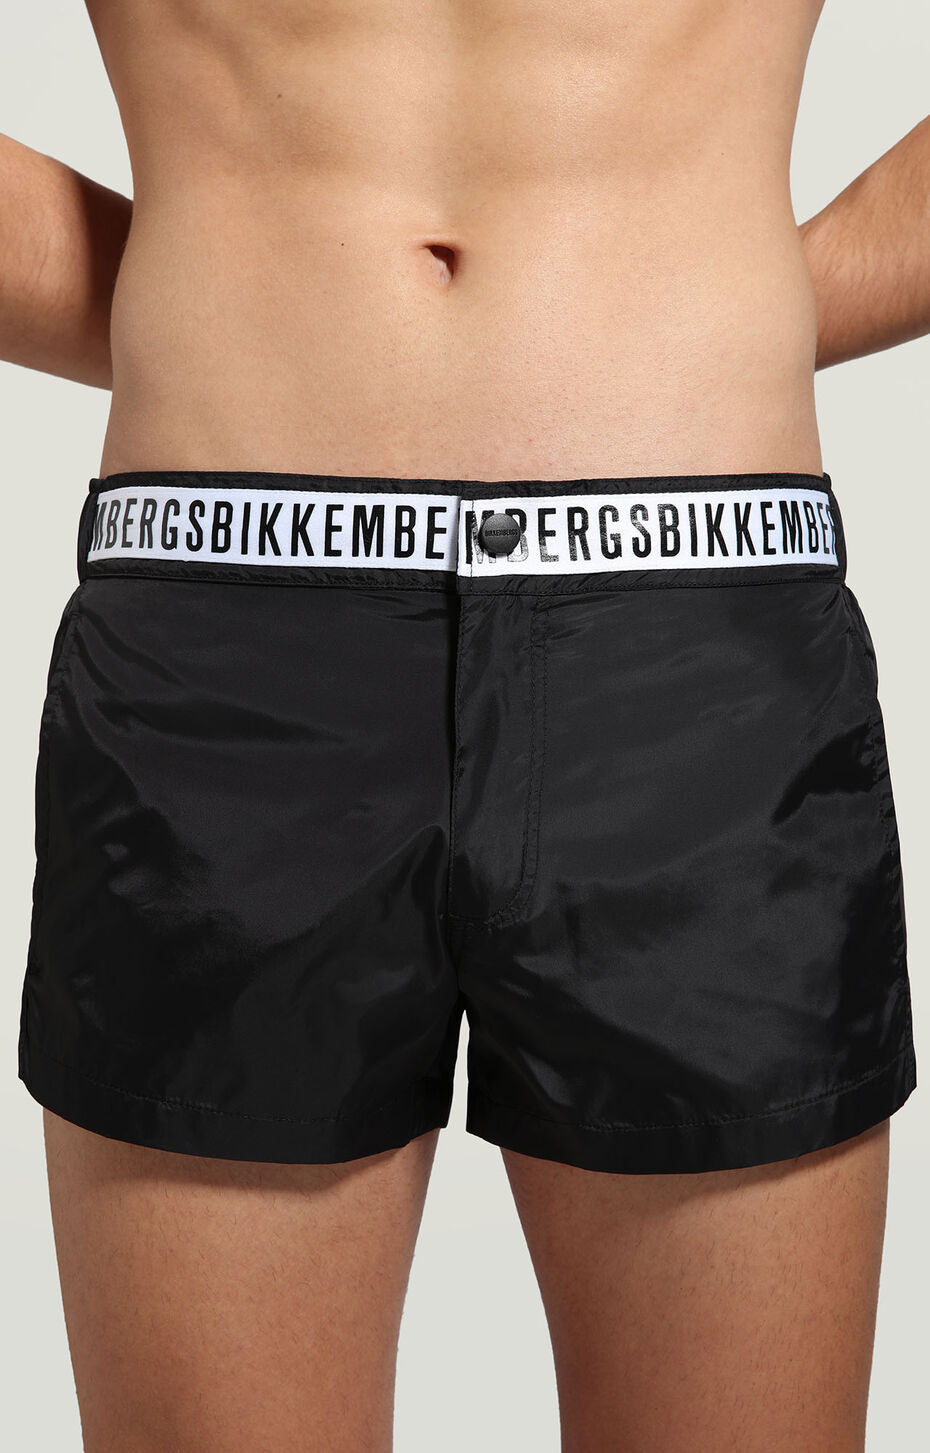 Bikkembergs swimwear